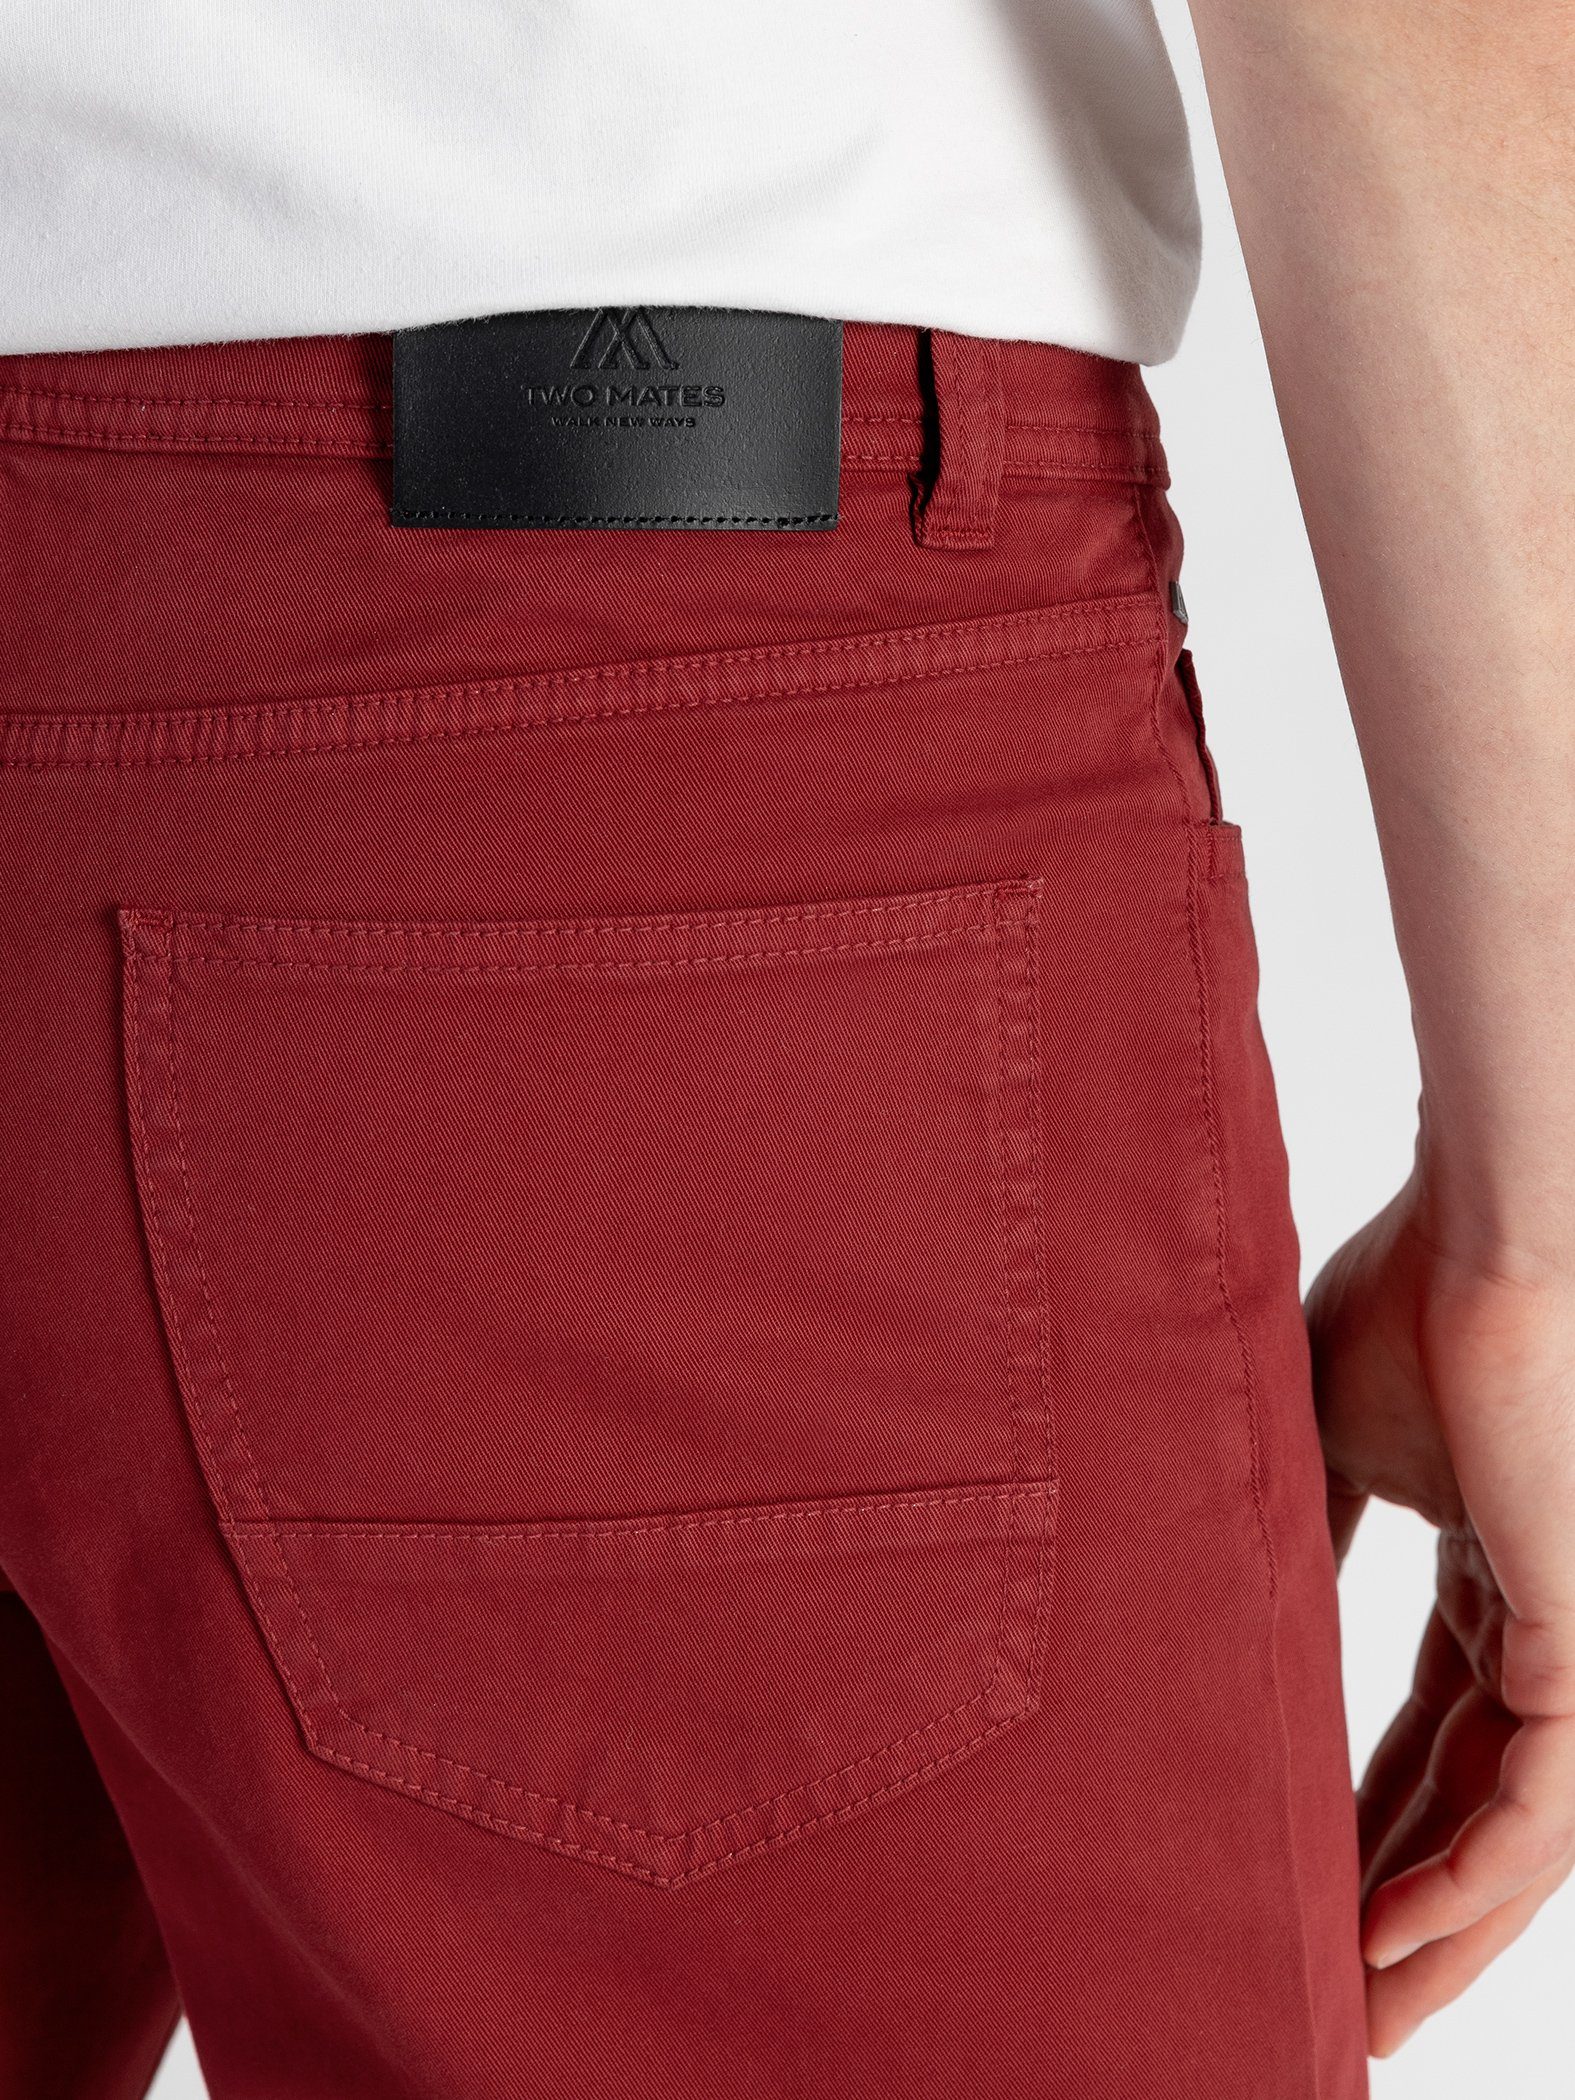 elastischem 5-Pocket mit GOTS-zertifiziert TwoMates Rot Farbauswahl, Bund, Stoffhose